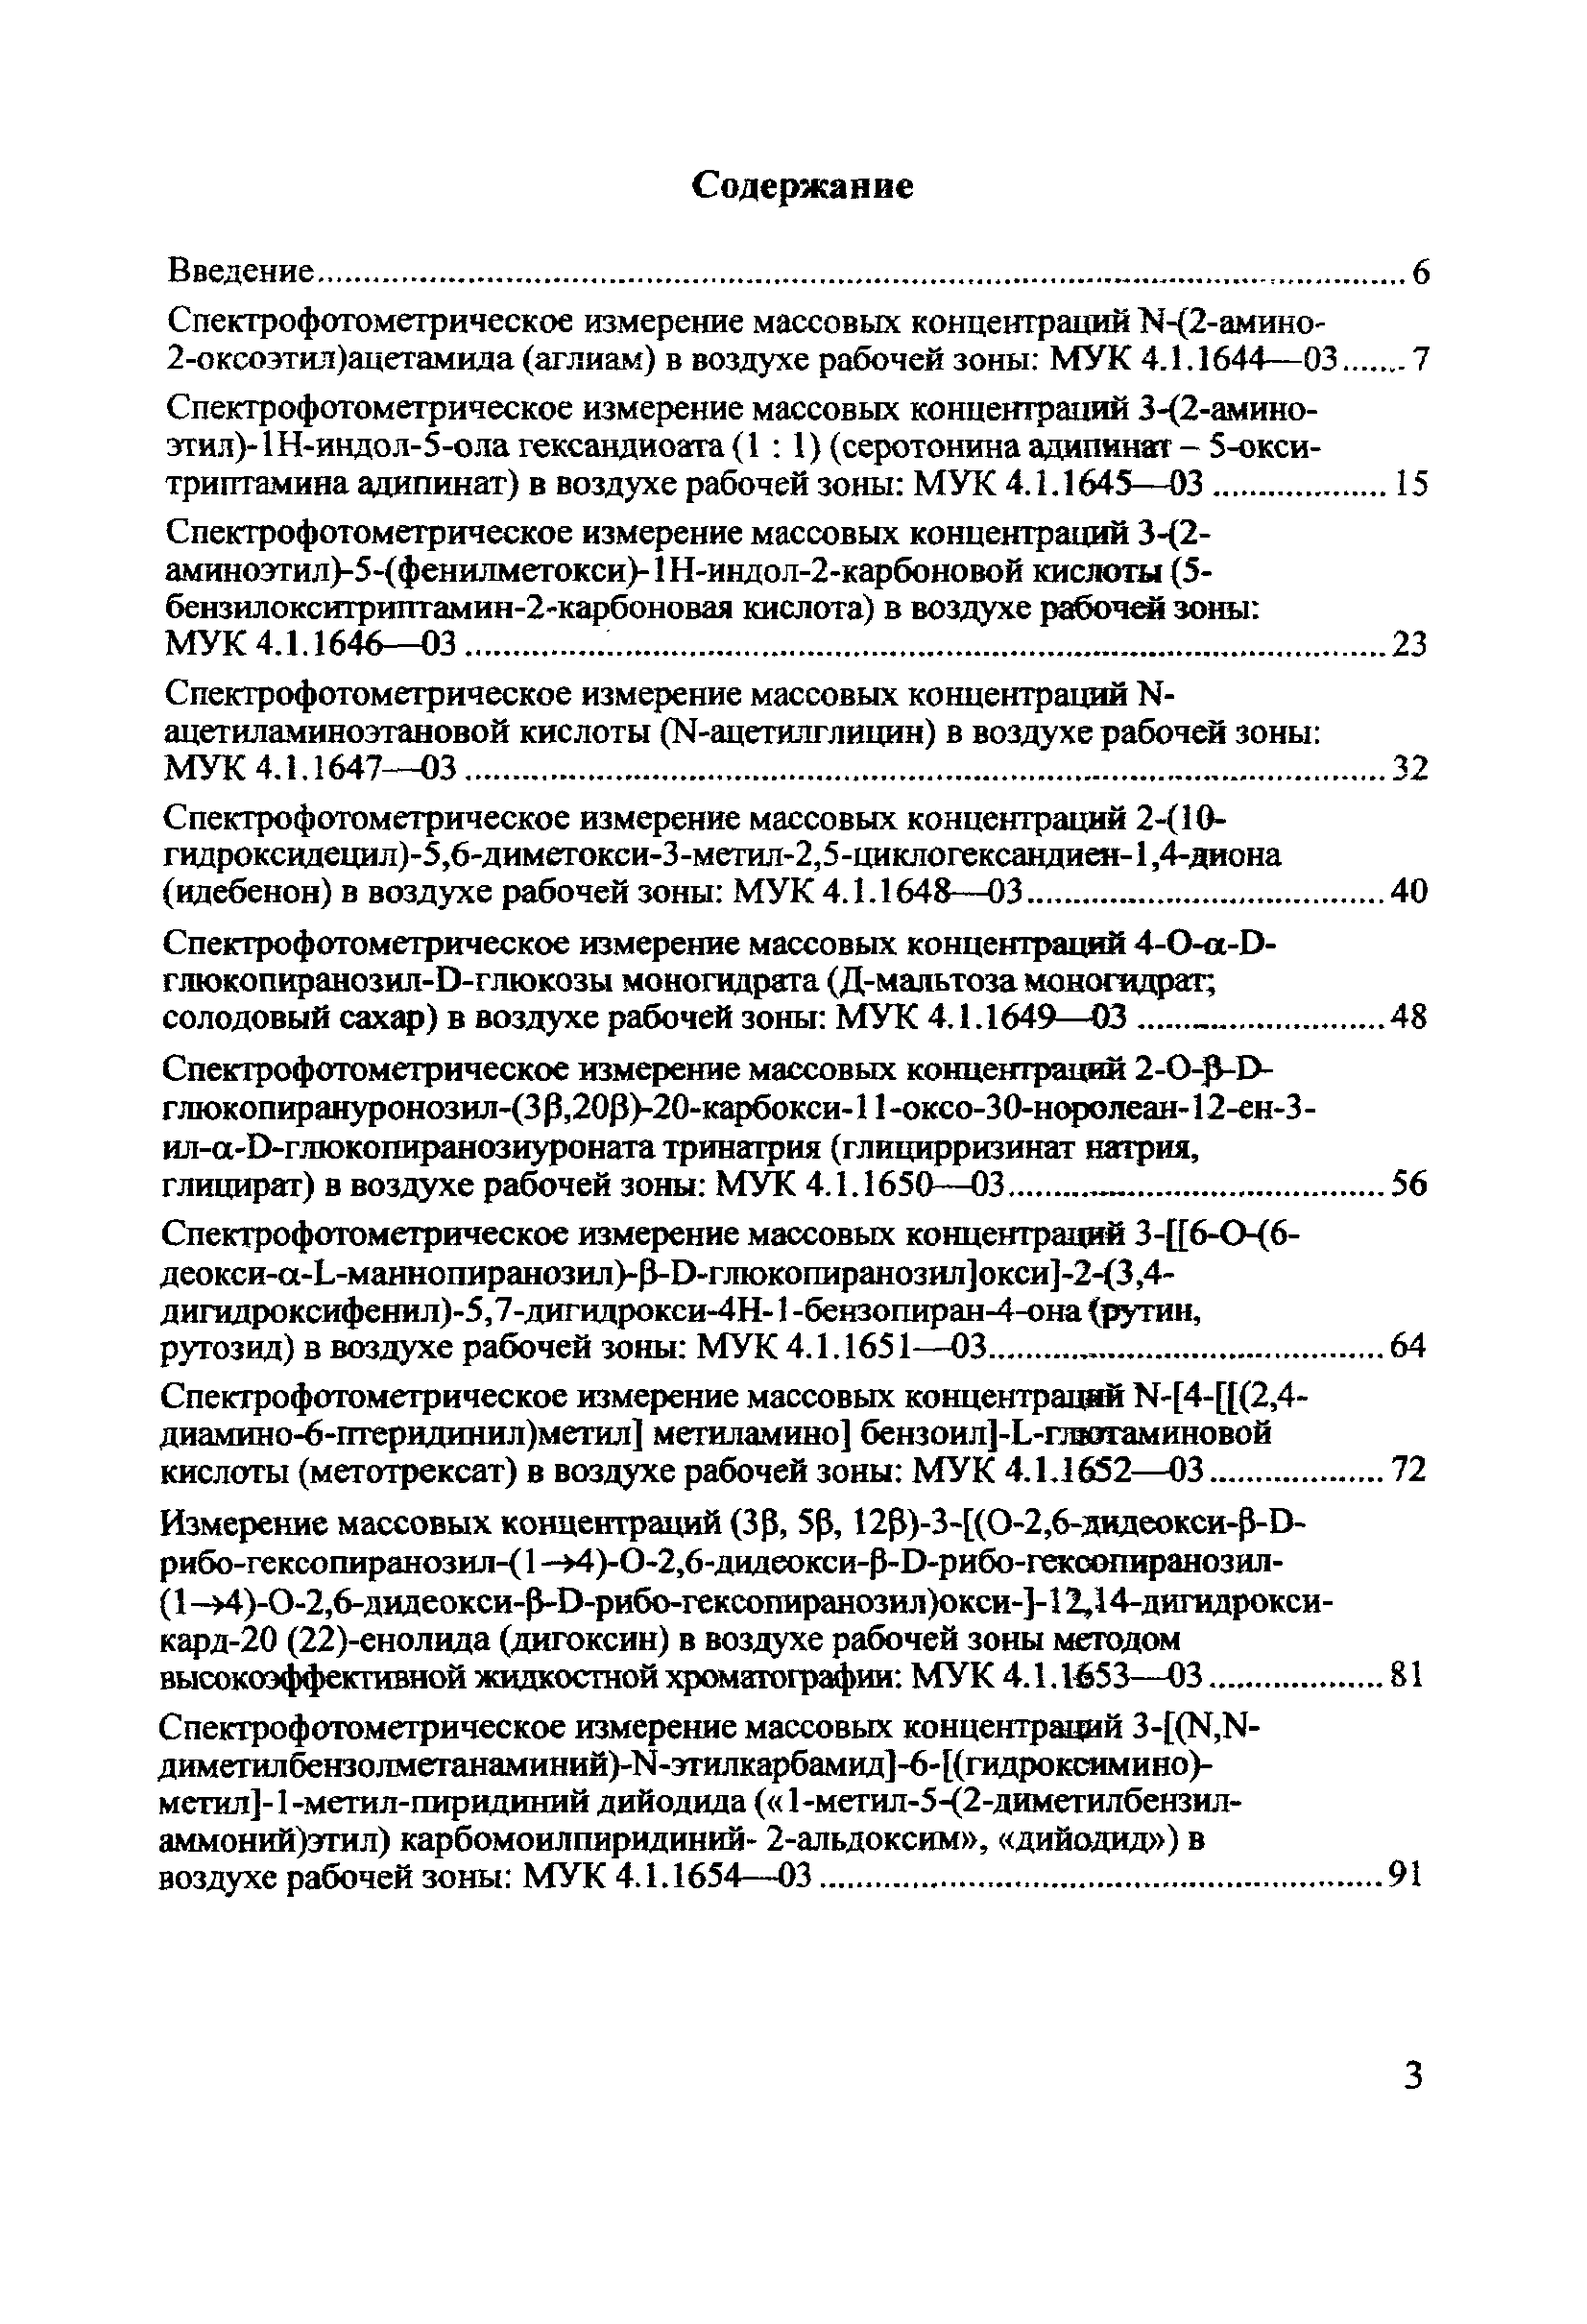 МУК 4.1.1667-03